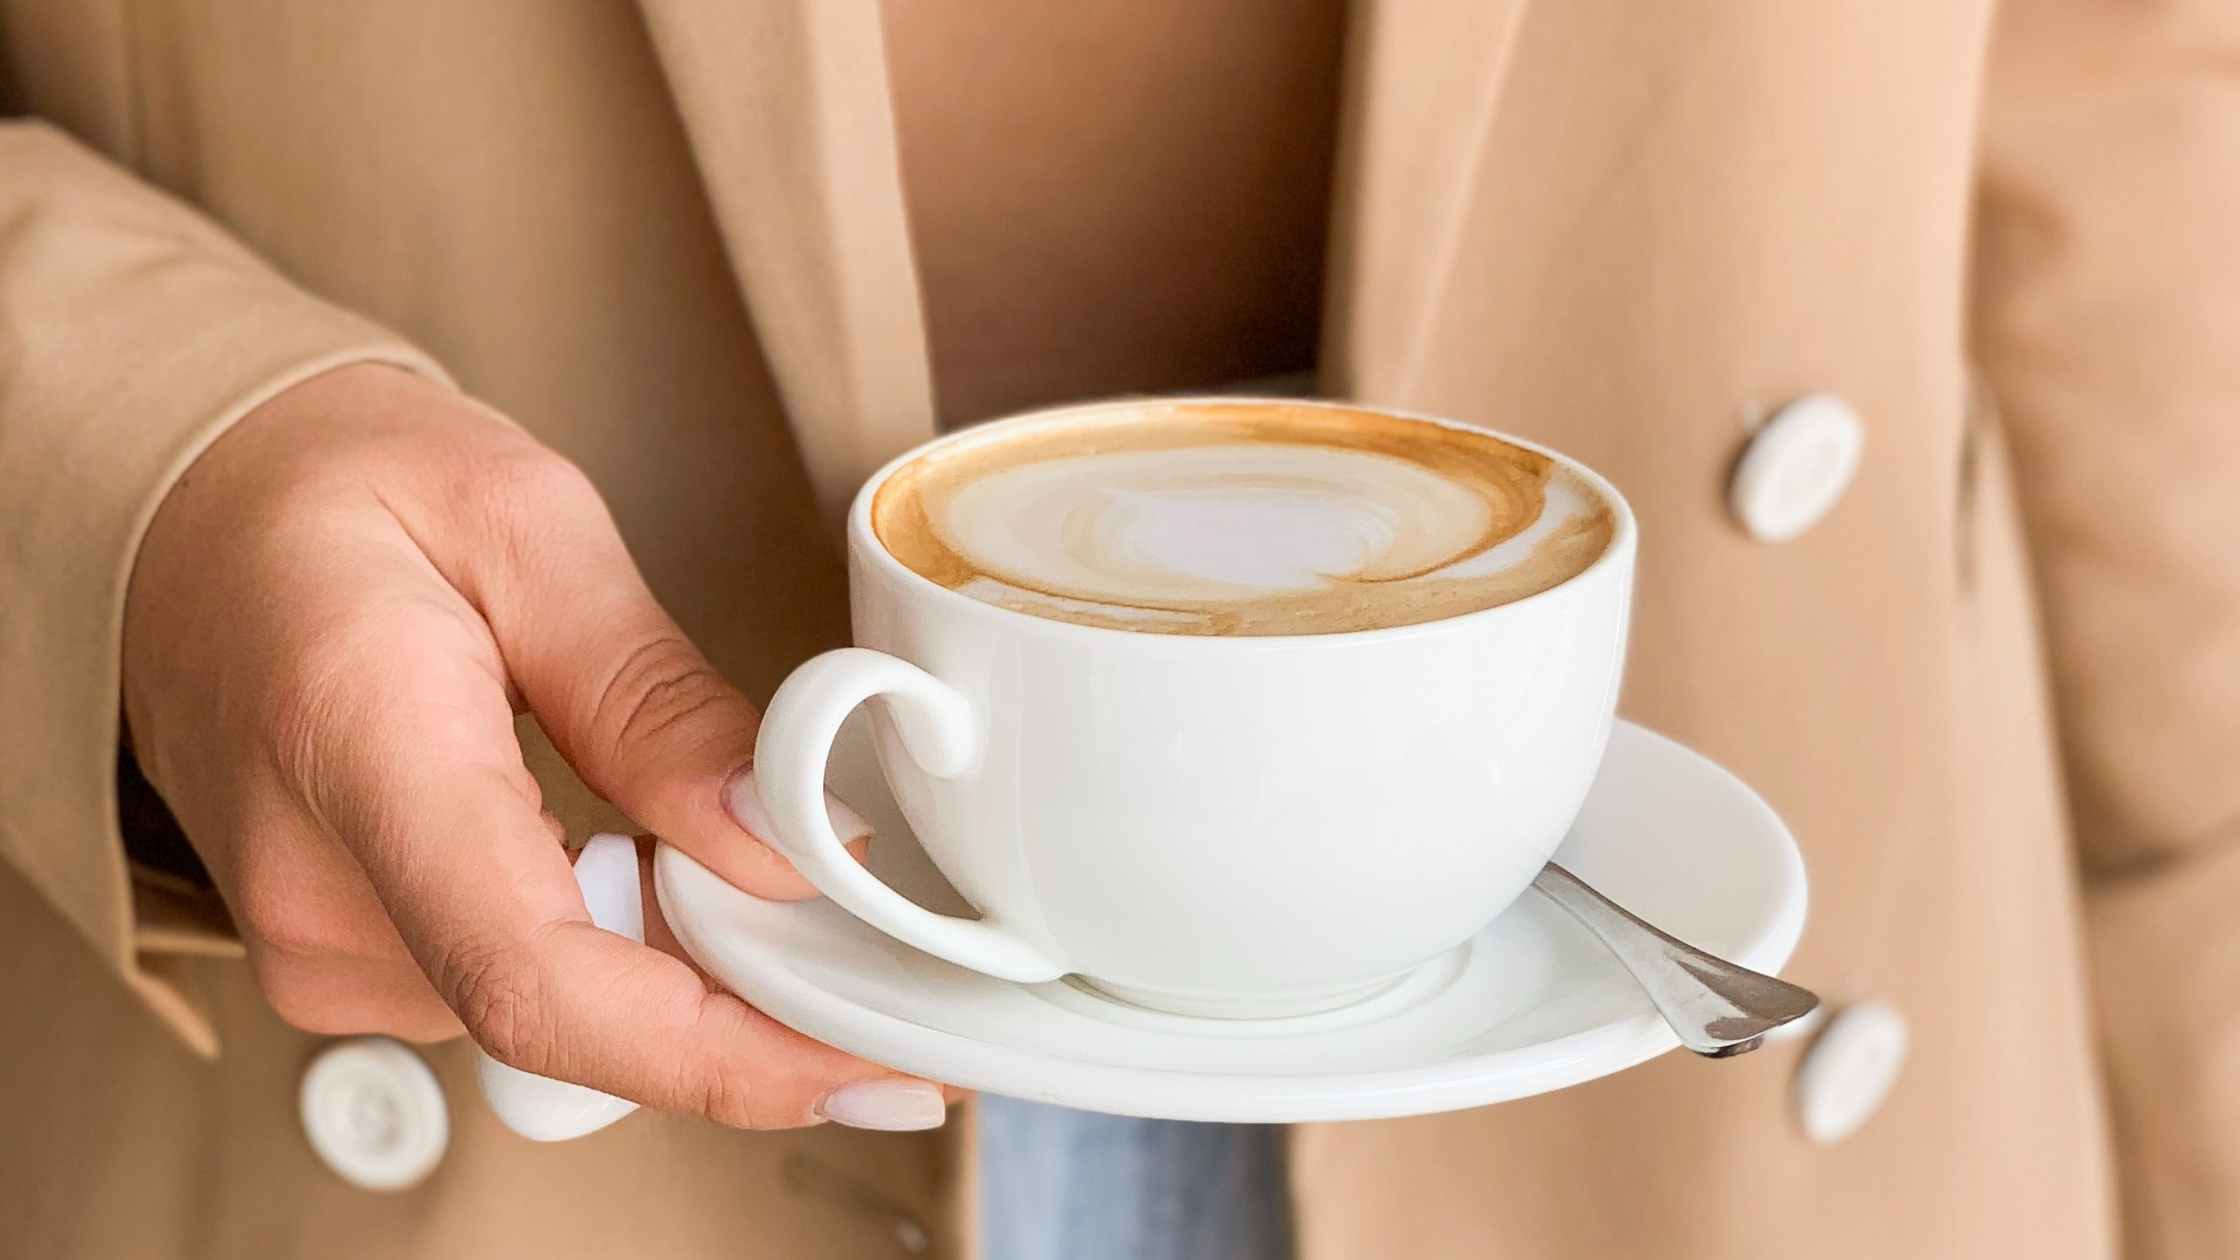 Koffiebonen kopen? Hoe kan een loopbaanadviseur je helpen? Wat vind jij het belangrijkste als het om koffie gaat?